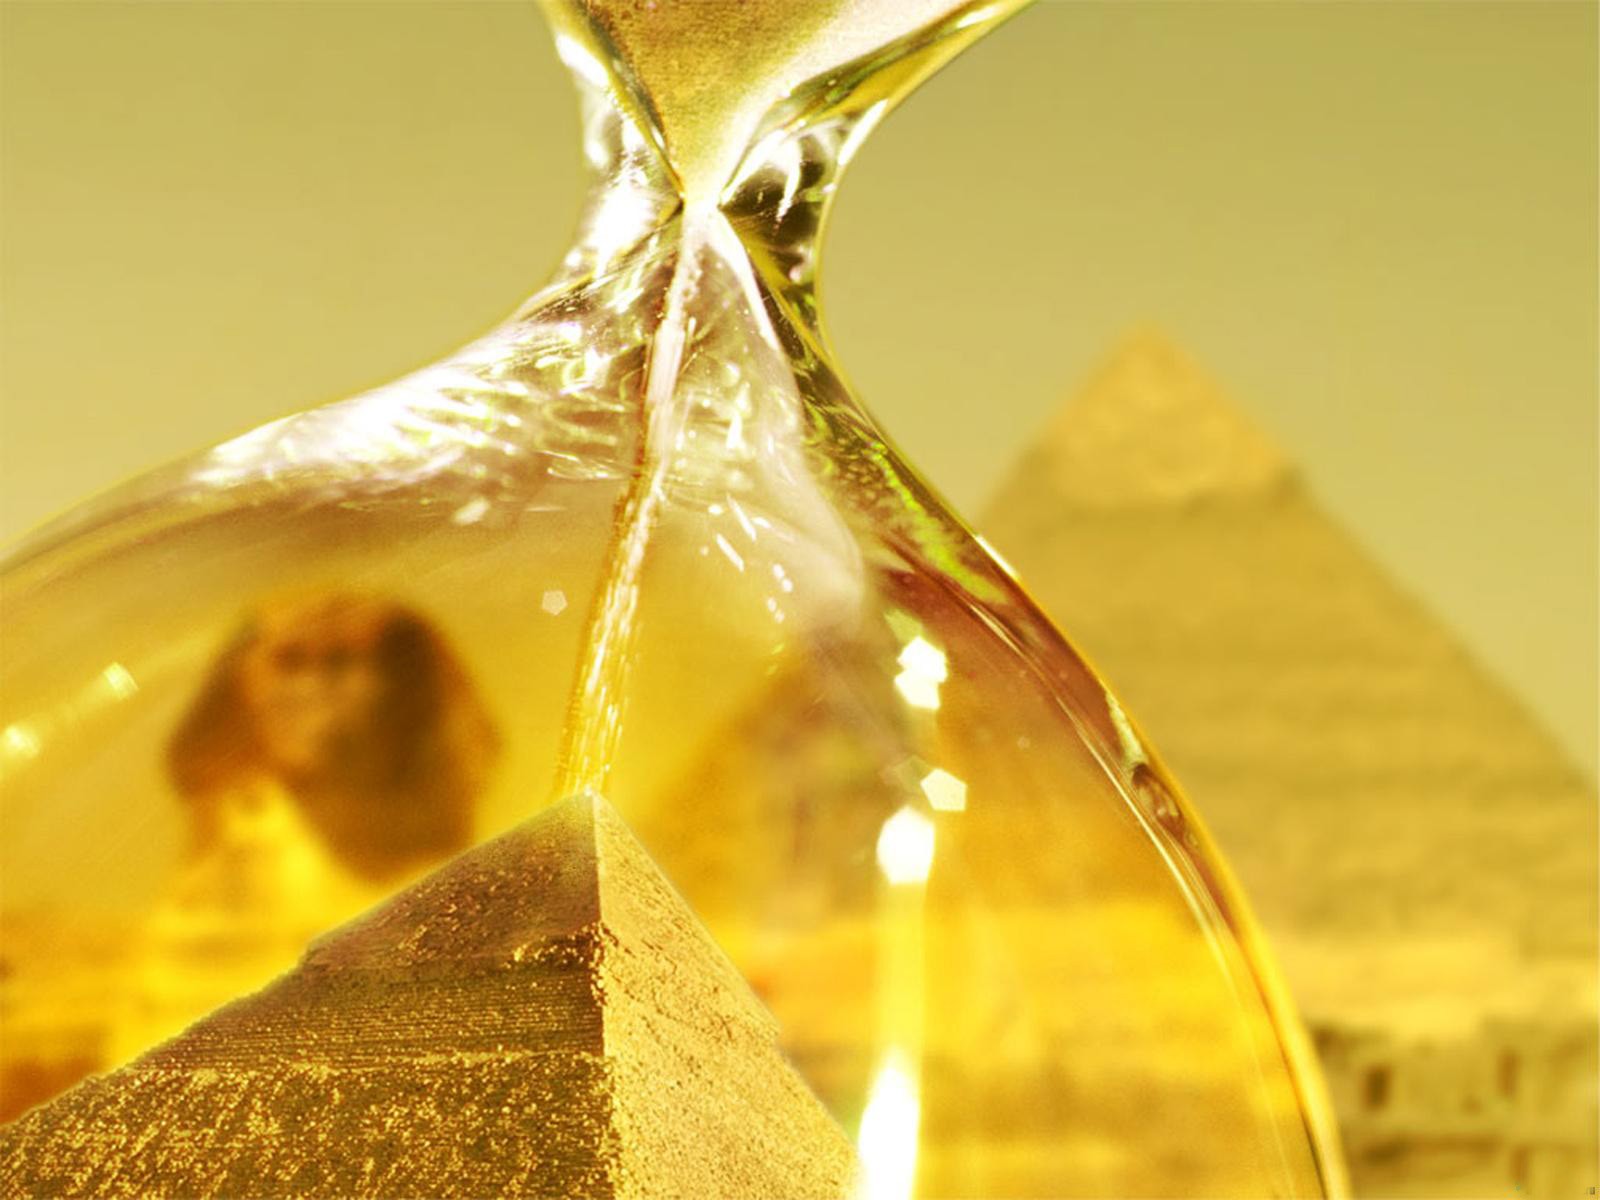 египет песочные часы желтый пирамиды сфинкс золото стекло песок солнце